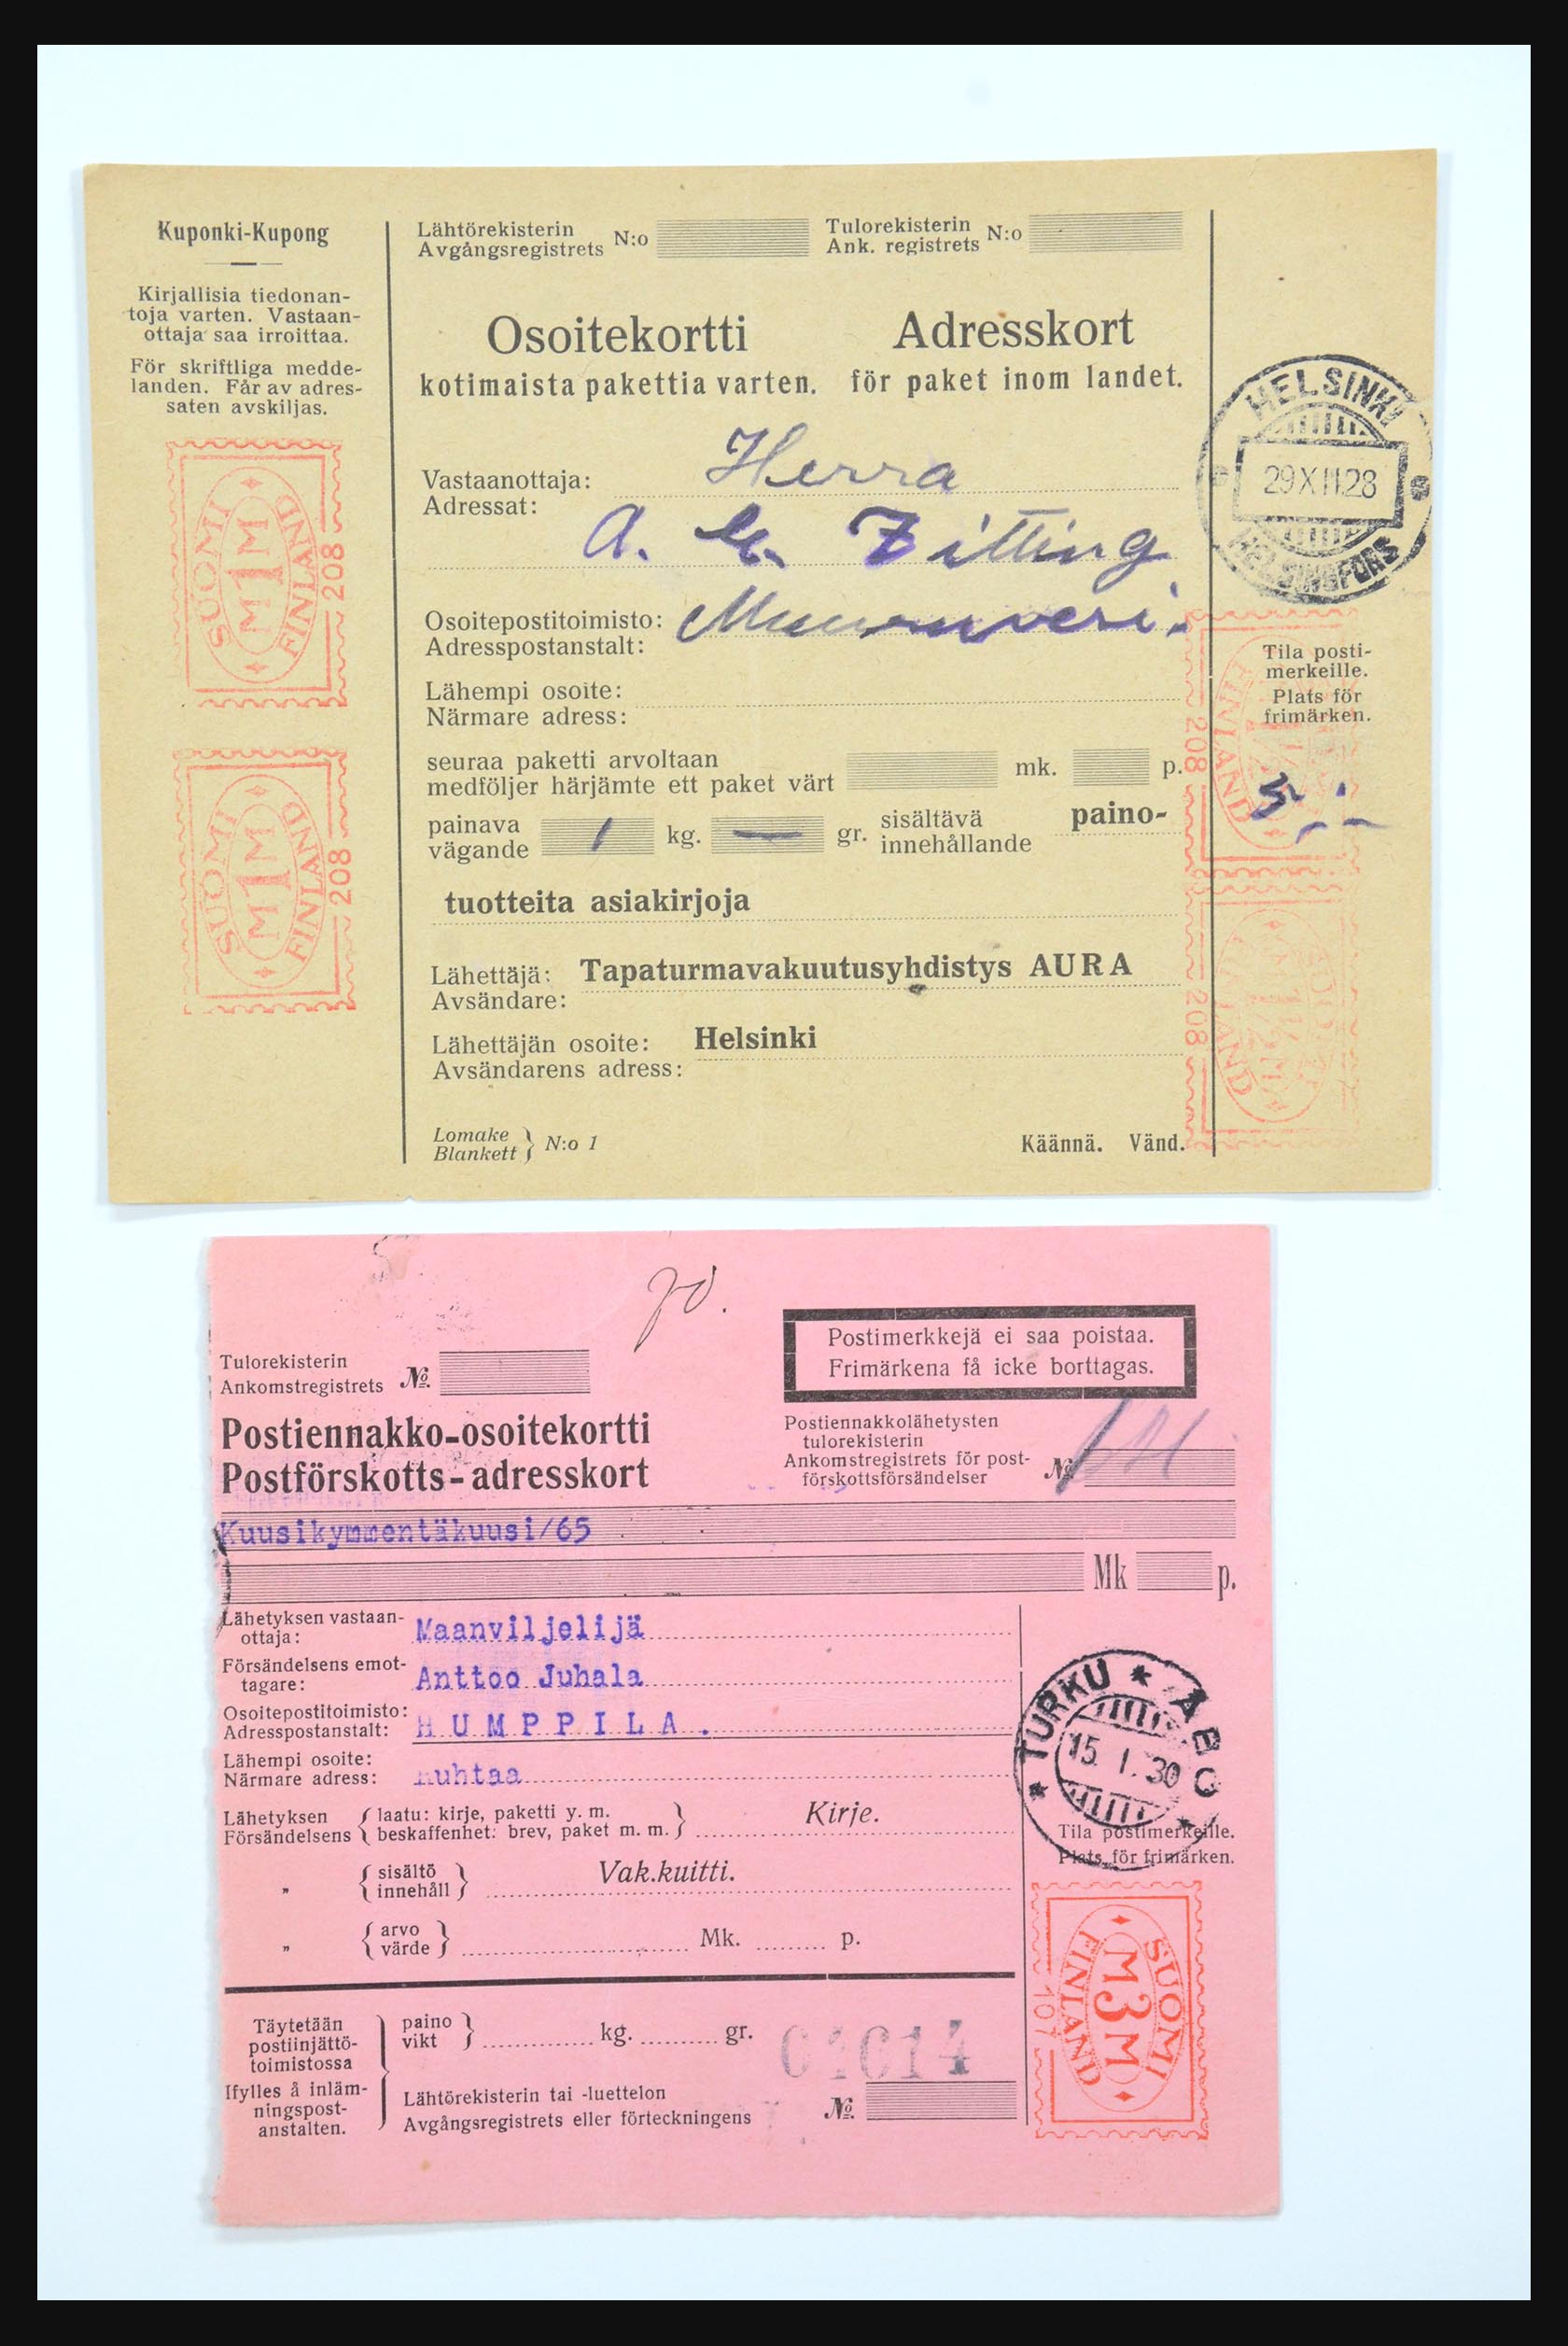 31658 058 - 31658 Finland brieven 1833-1960.